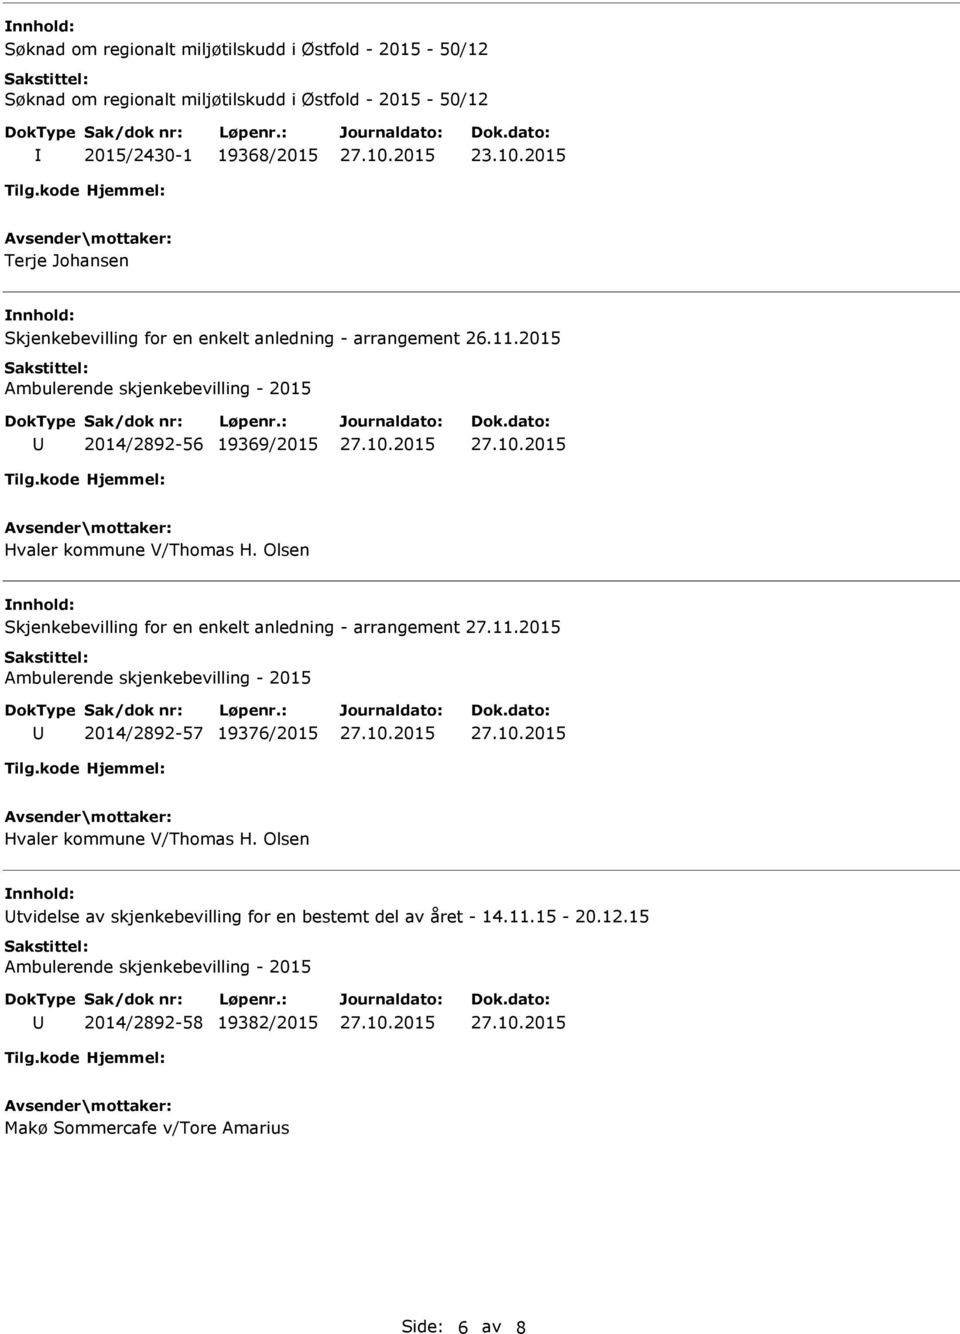 2015 Ambulerende skjenkebevilling - 2015 2014/2892-56 19369/2015 Hvaler kommune V/Thomas H. Olsen Skjenkebevilling for en enkelt anledning - arrangement 27.11.